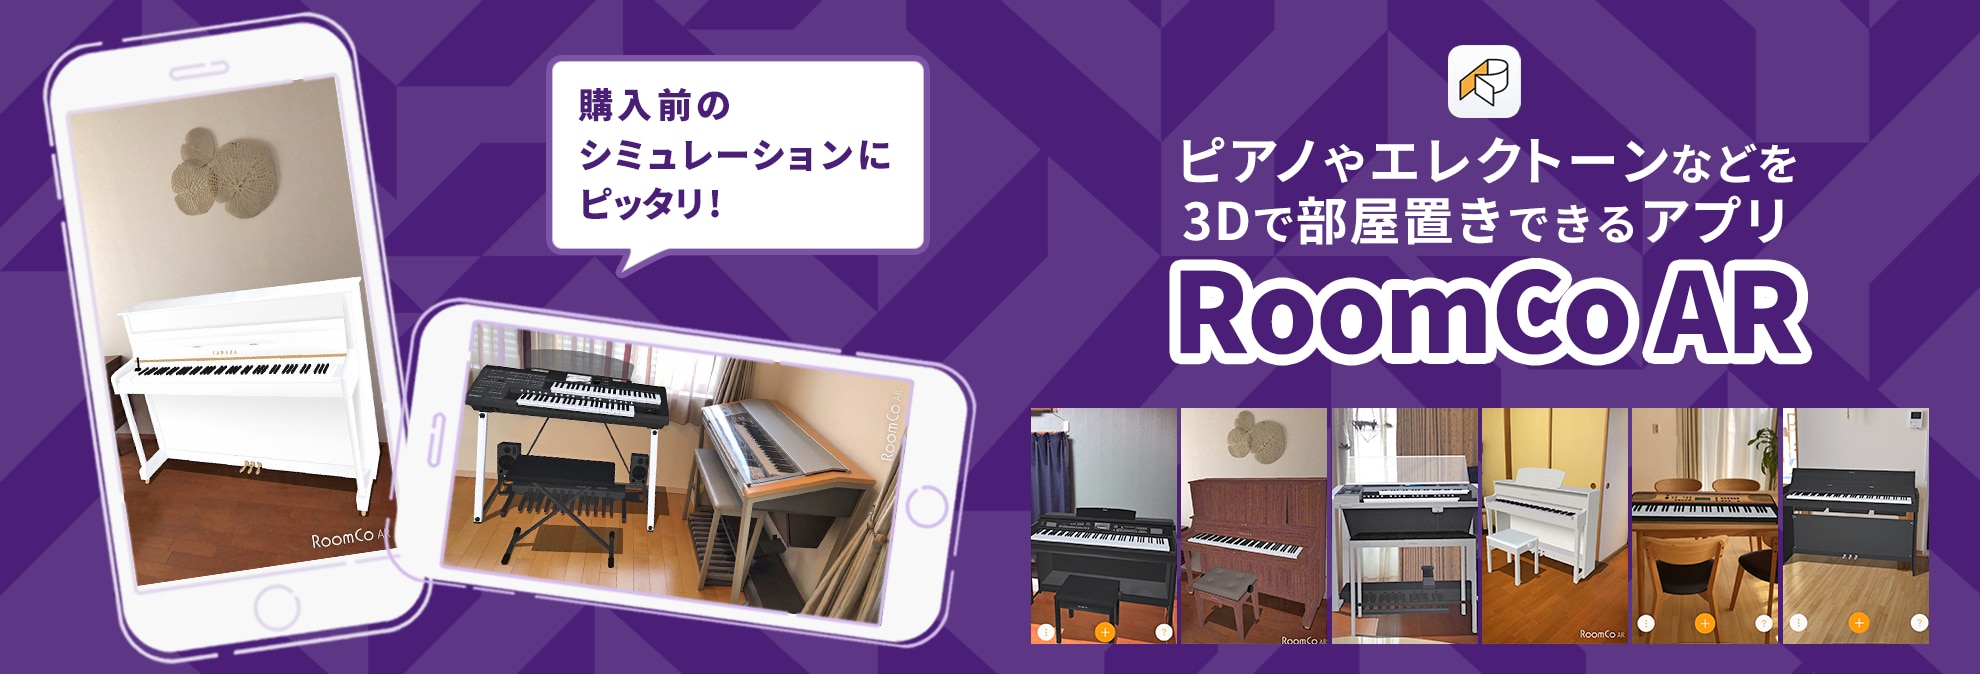 ピアノやエレクトーンなどを3Dで部屋置きできるアプリ「RoomCoAR」